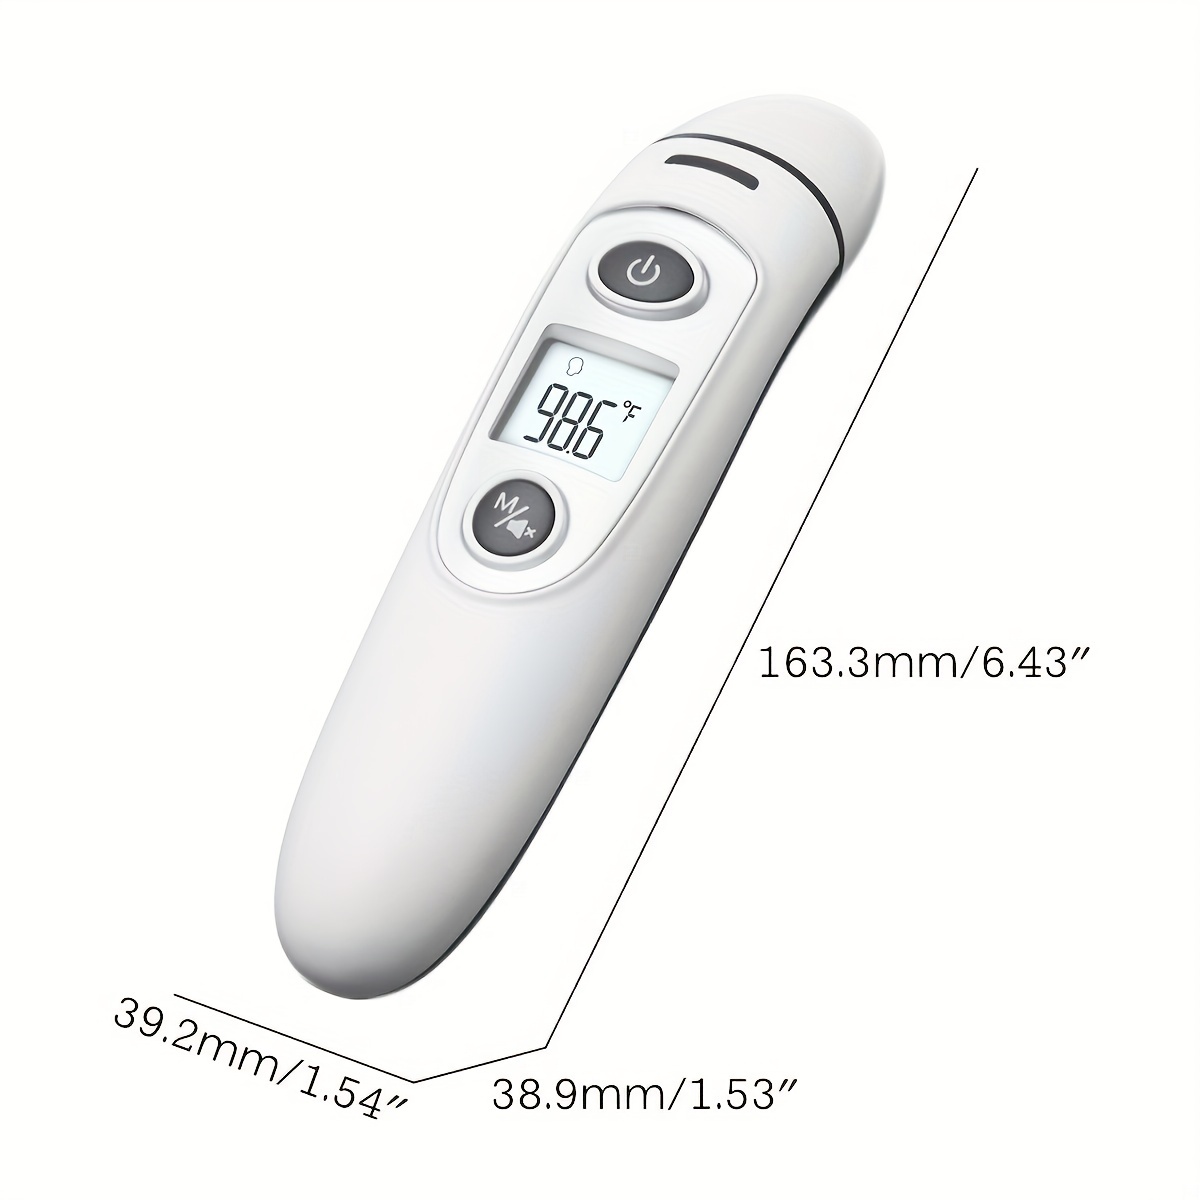 Thermomètre auriculaire numérique pour adultes, enfants et bébés